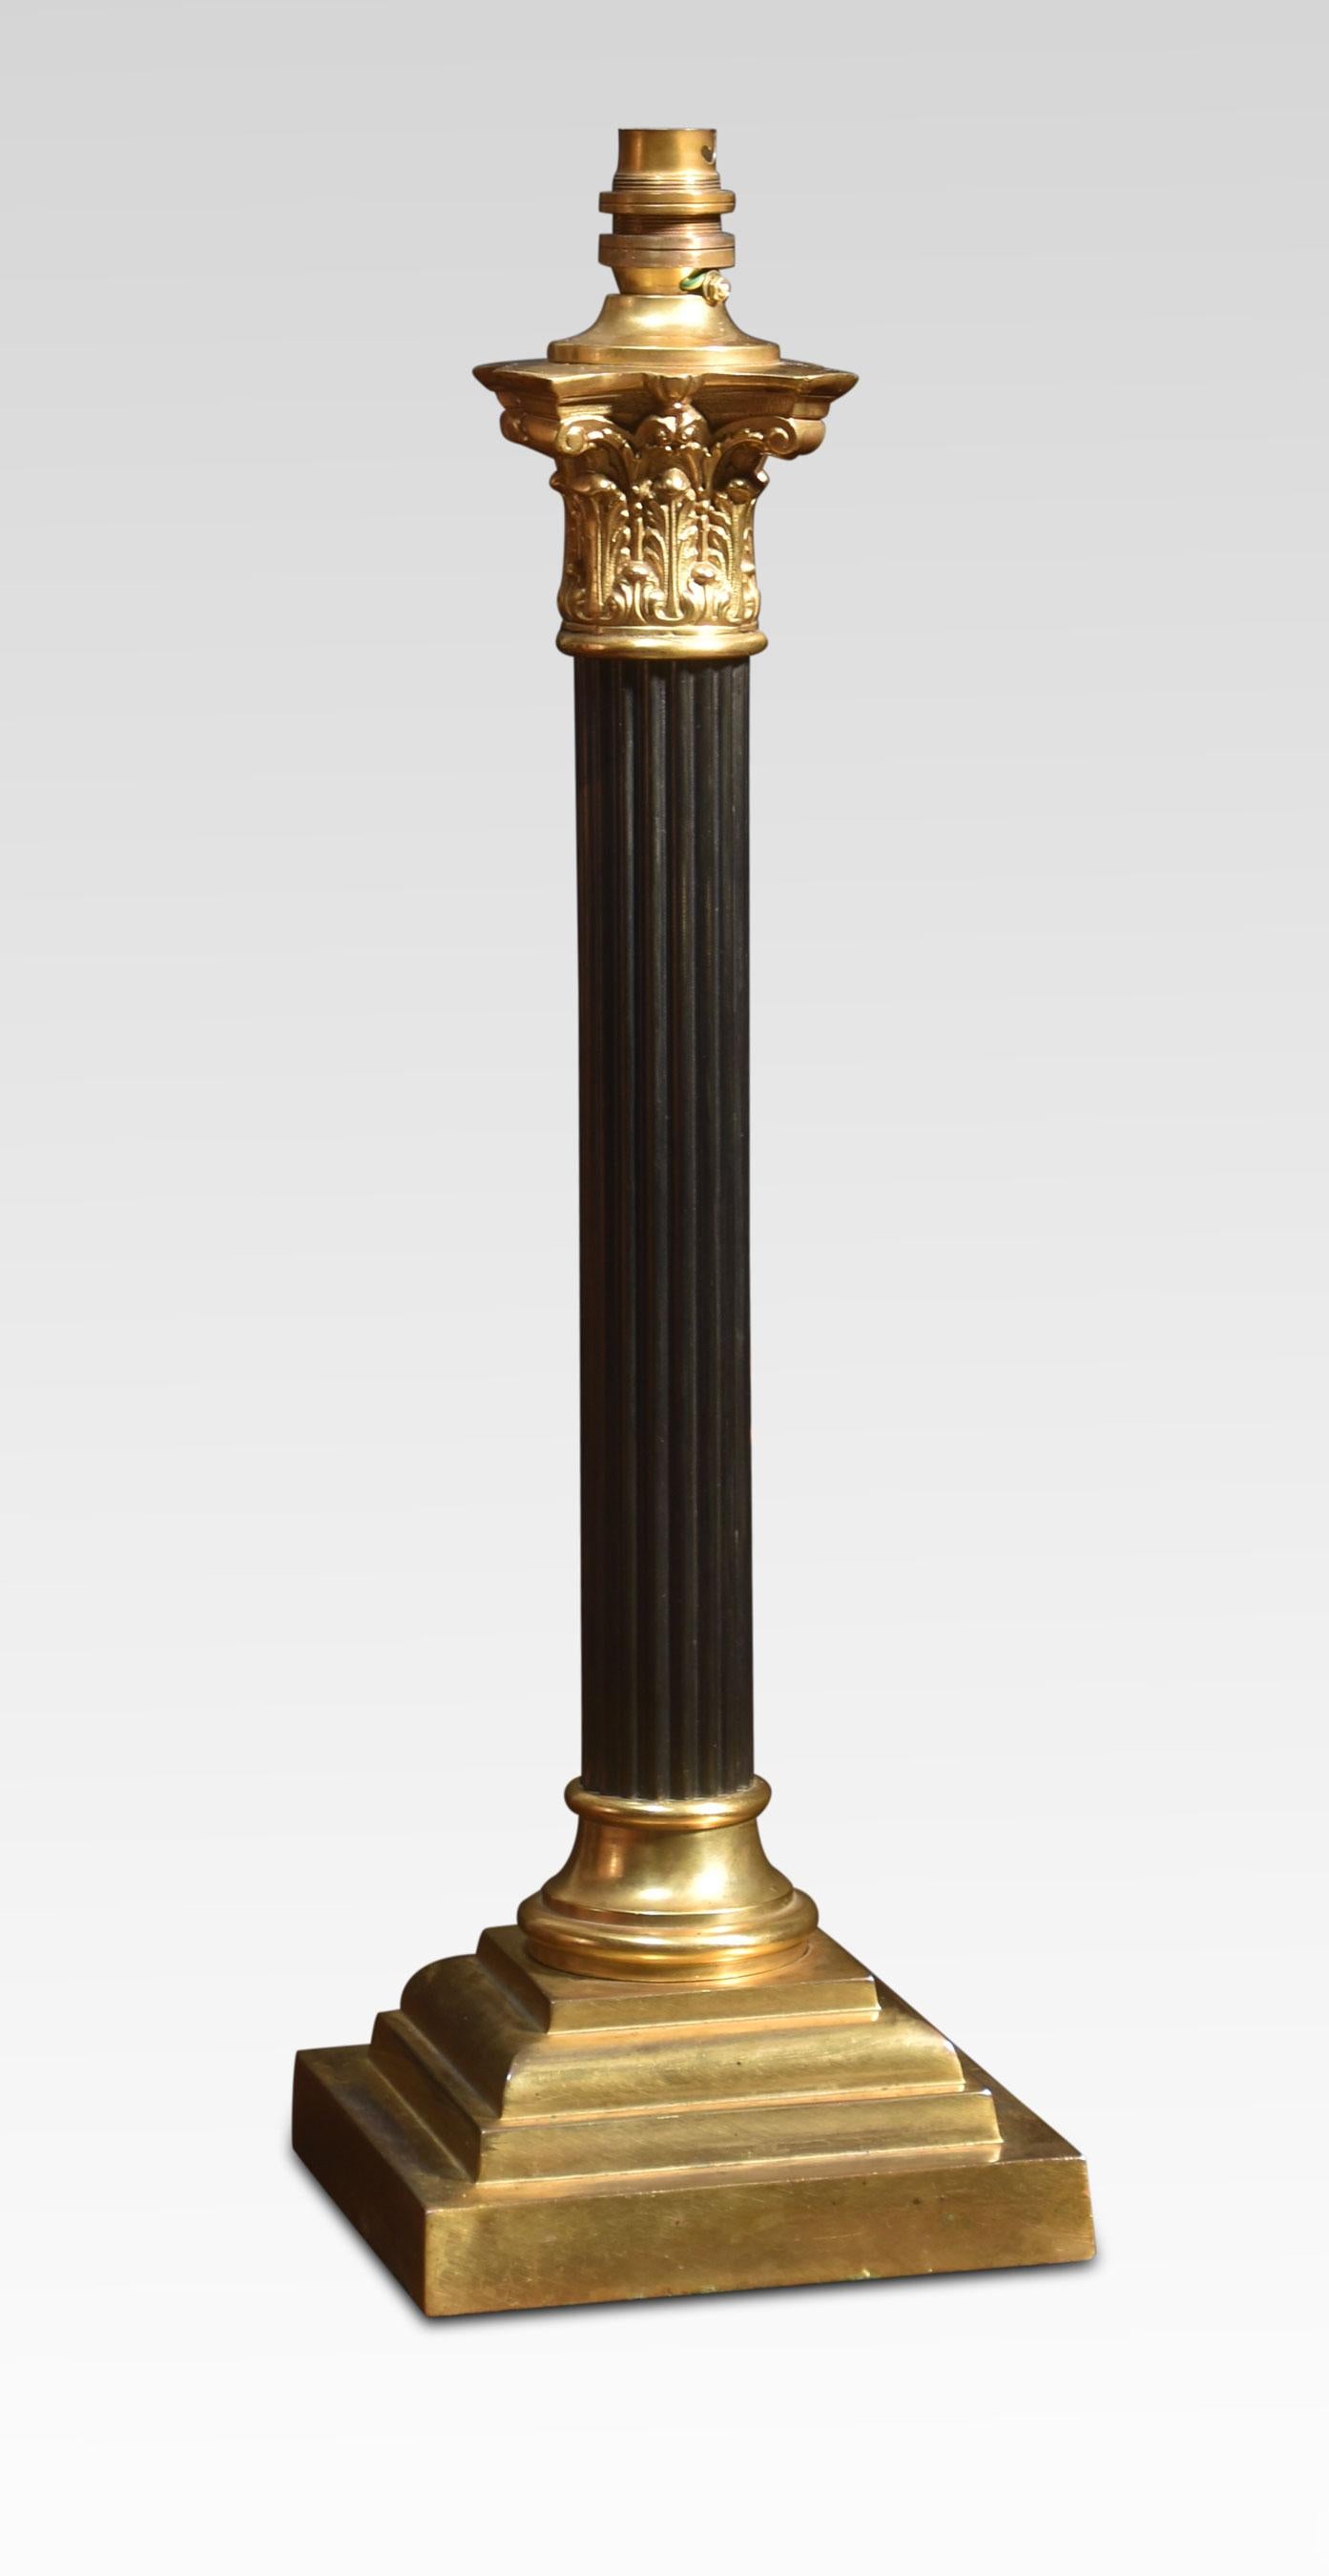 Tischlampe aus Messing mit korinthischer Säule auf einem abgestuften quadratischen Sockel. Die Lampe wurde neu verkabelt und getestet.
Abmessungen
Höhe 20,5 Zoll
Breite 6,5 Zoll
Tiefe 6,5 Zoll